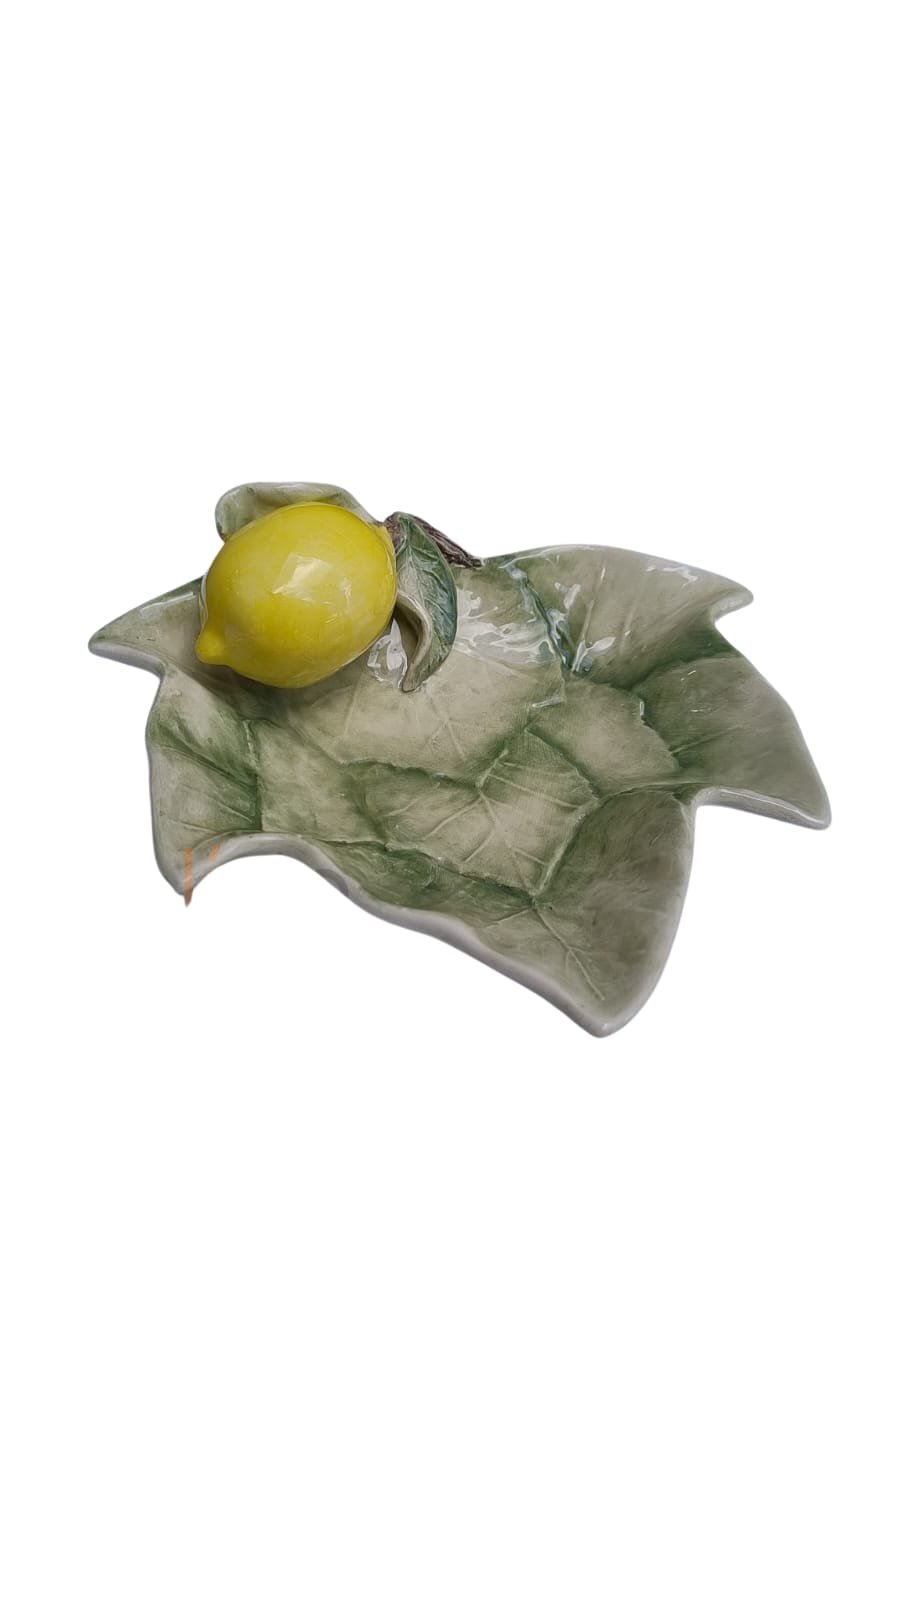 Petisqueira Folha de Uva com Aplique de Limão em Cerâmica - Pastore Faiança Brasil